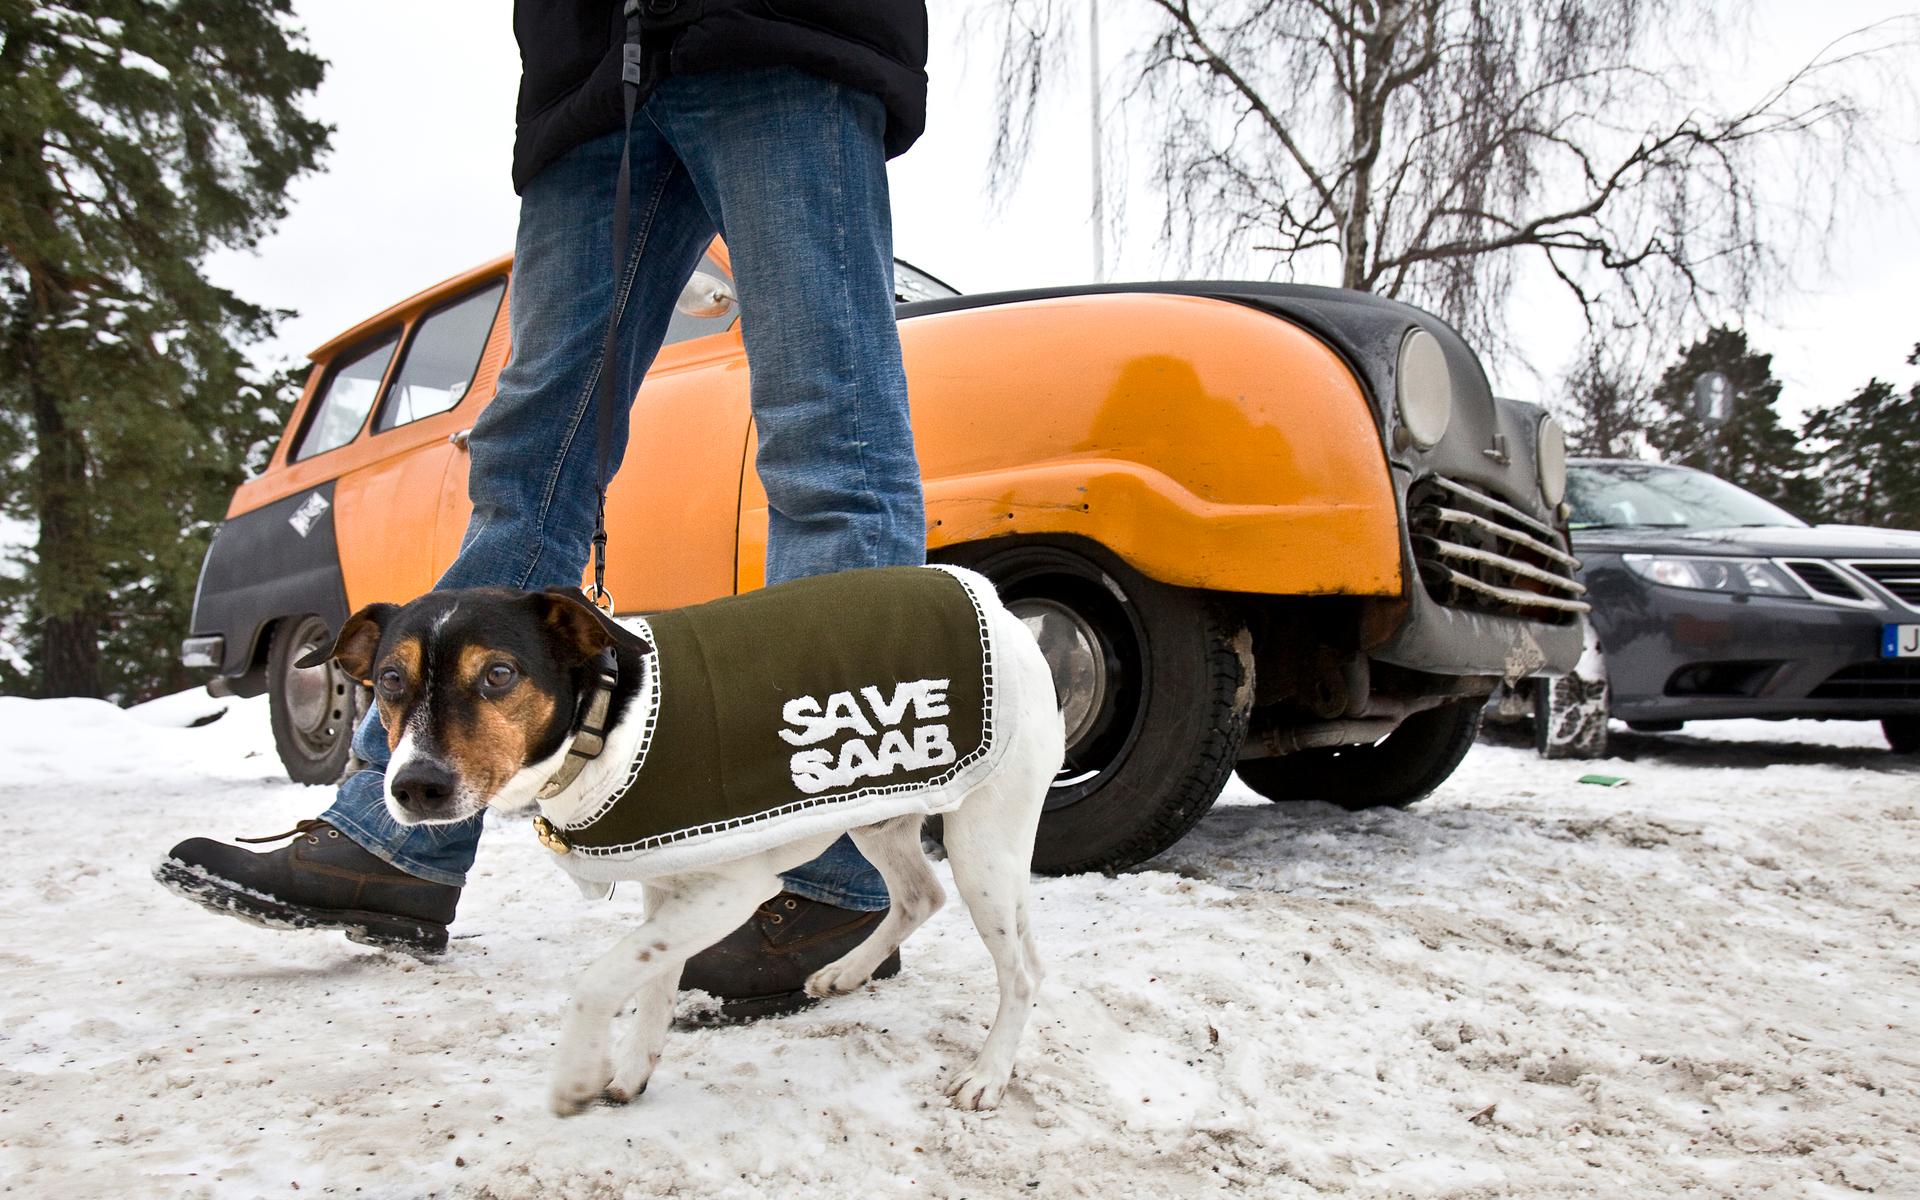 Saab-konvojen. Hunden Fido kom med husse och matte, Katarina Hagel och Emil Wallmark, från Stockholm för att stötta Saab. Därhemma har de nio Saab-bilar att välja bland.